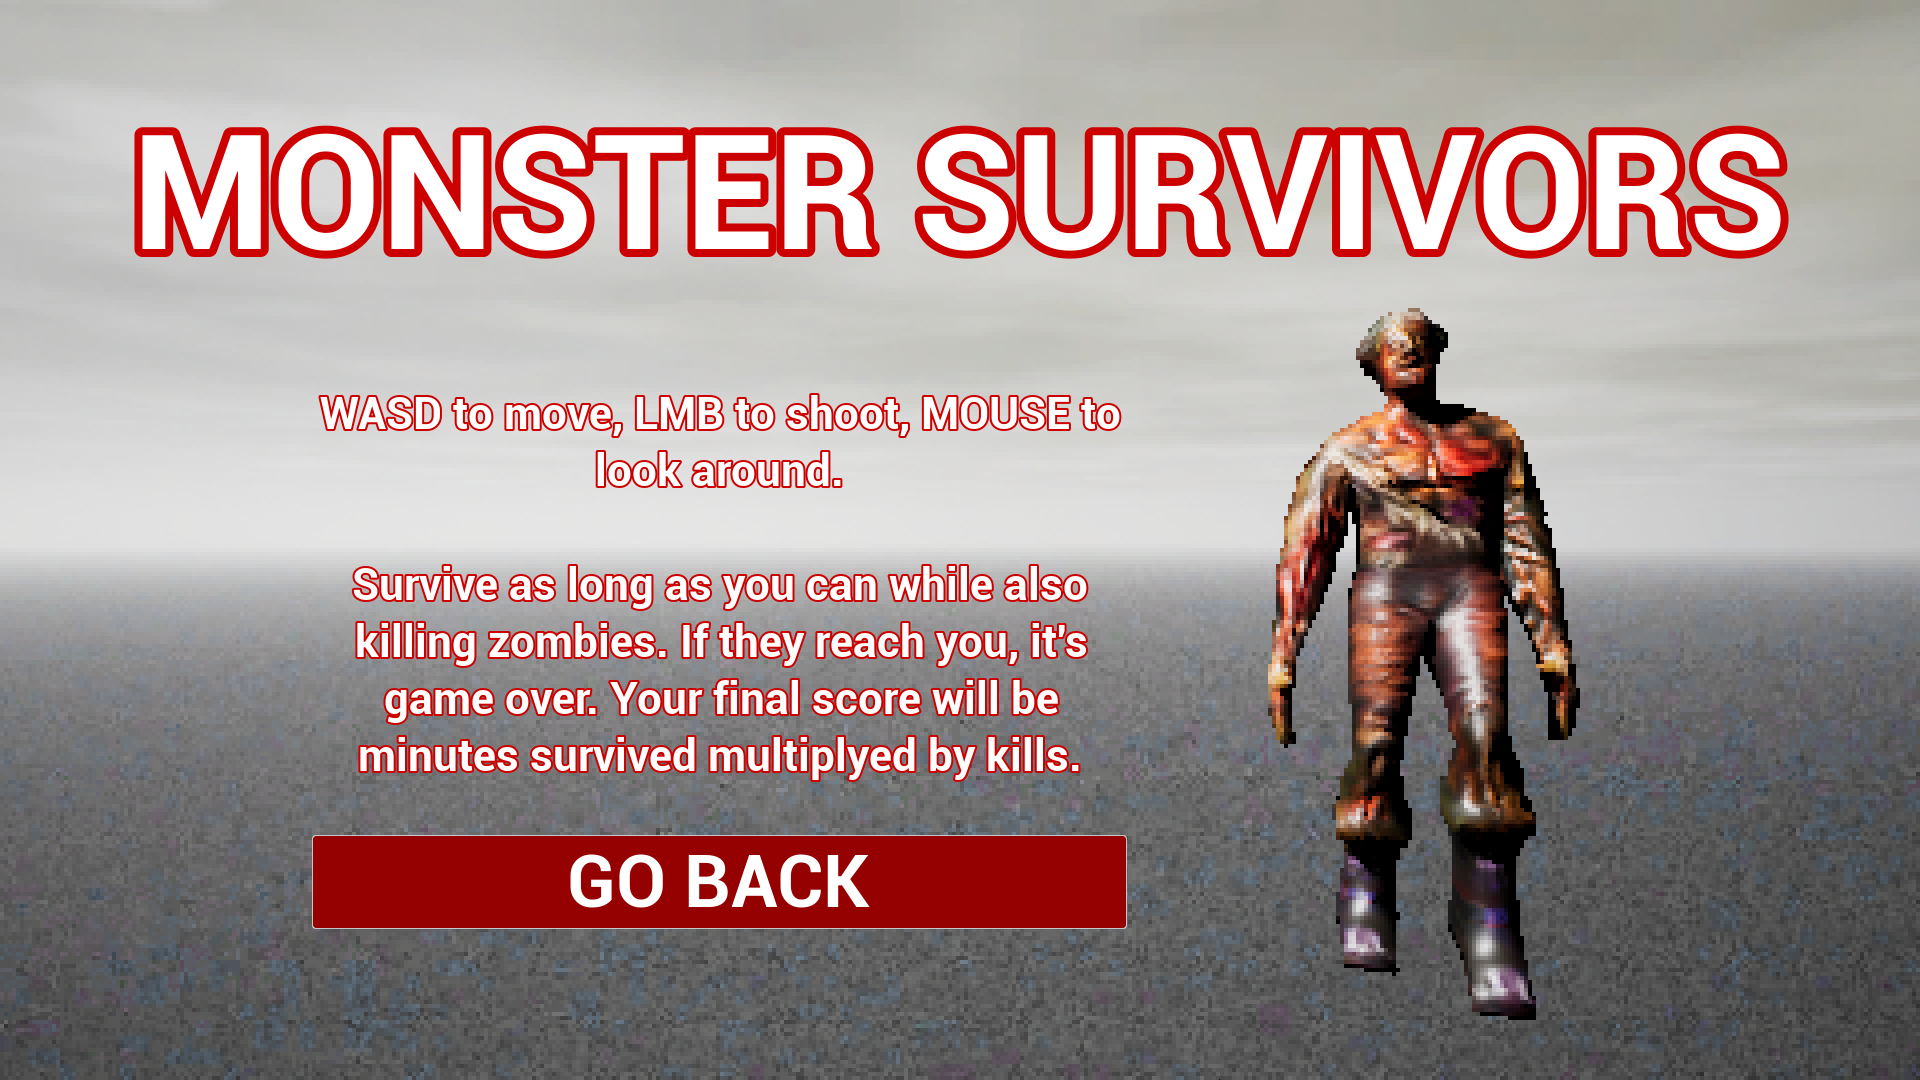 Ask Horror Monster Survivors